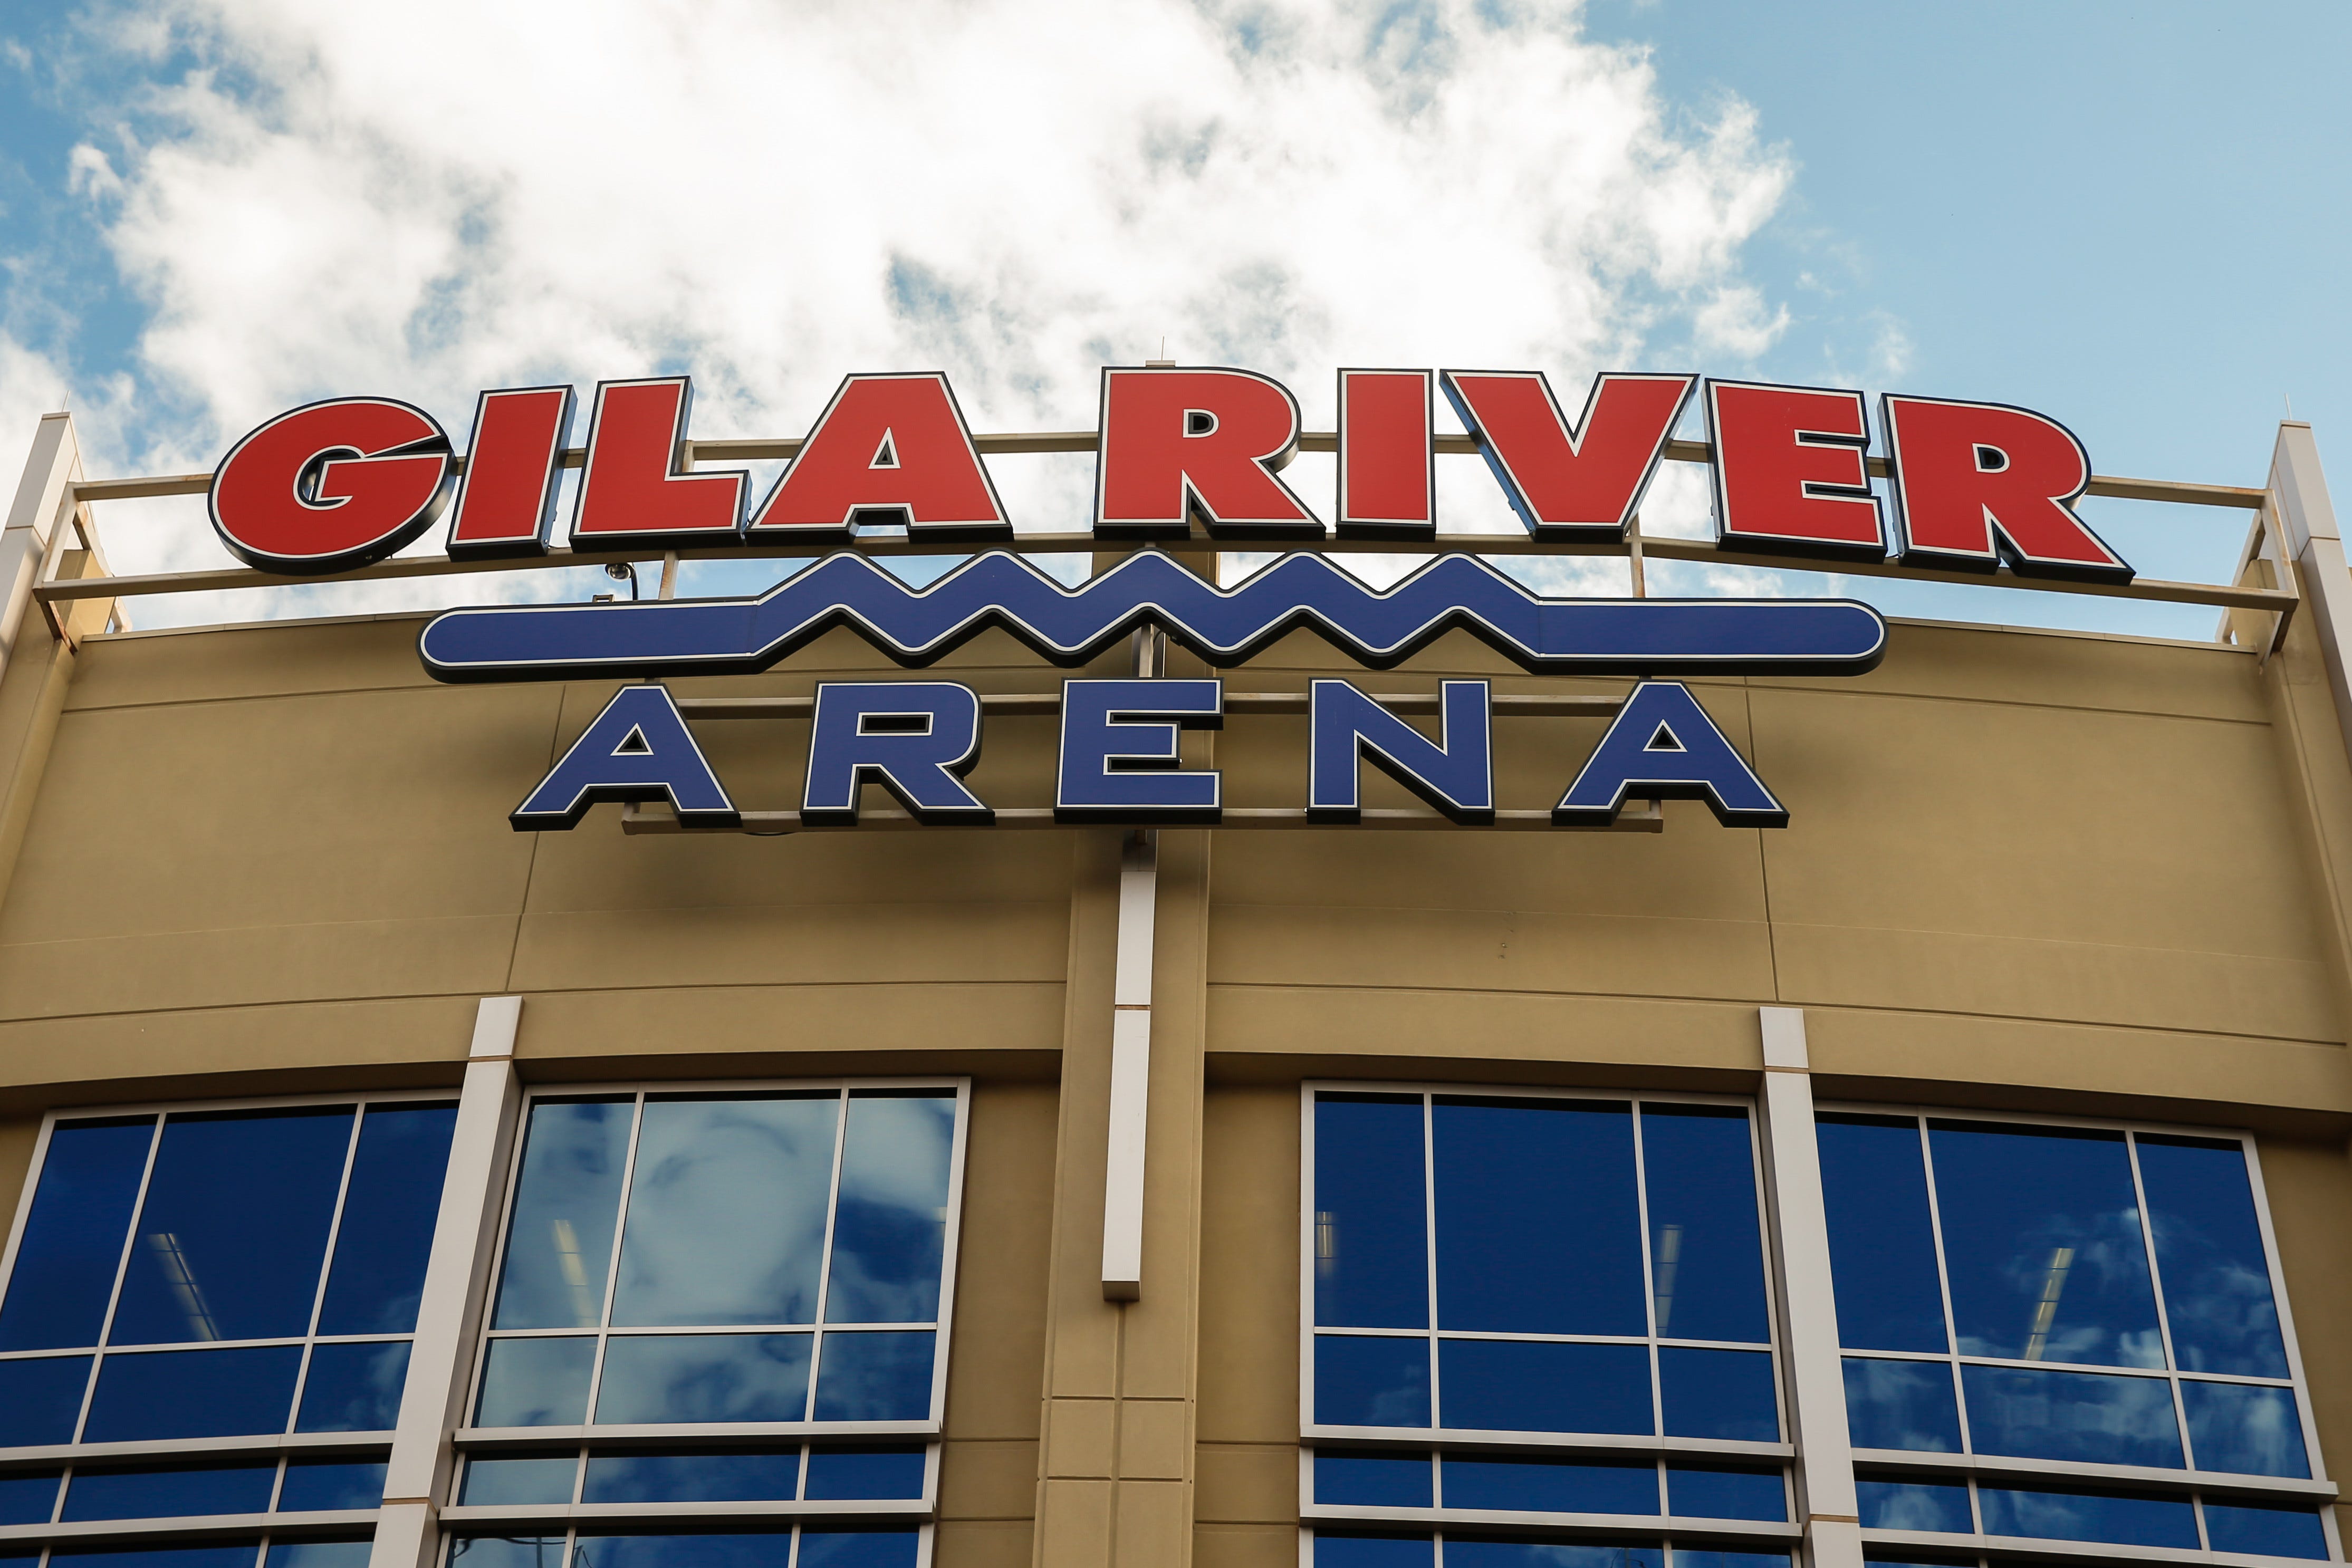 Coyotes home now officially Gila River Arena